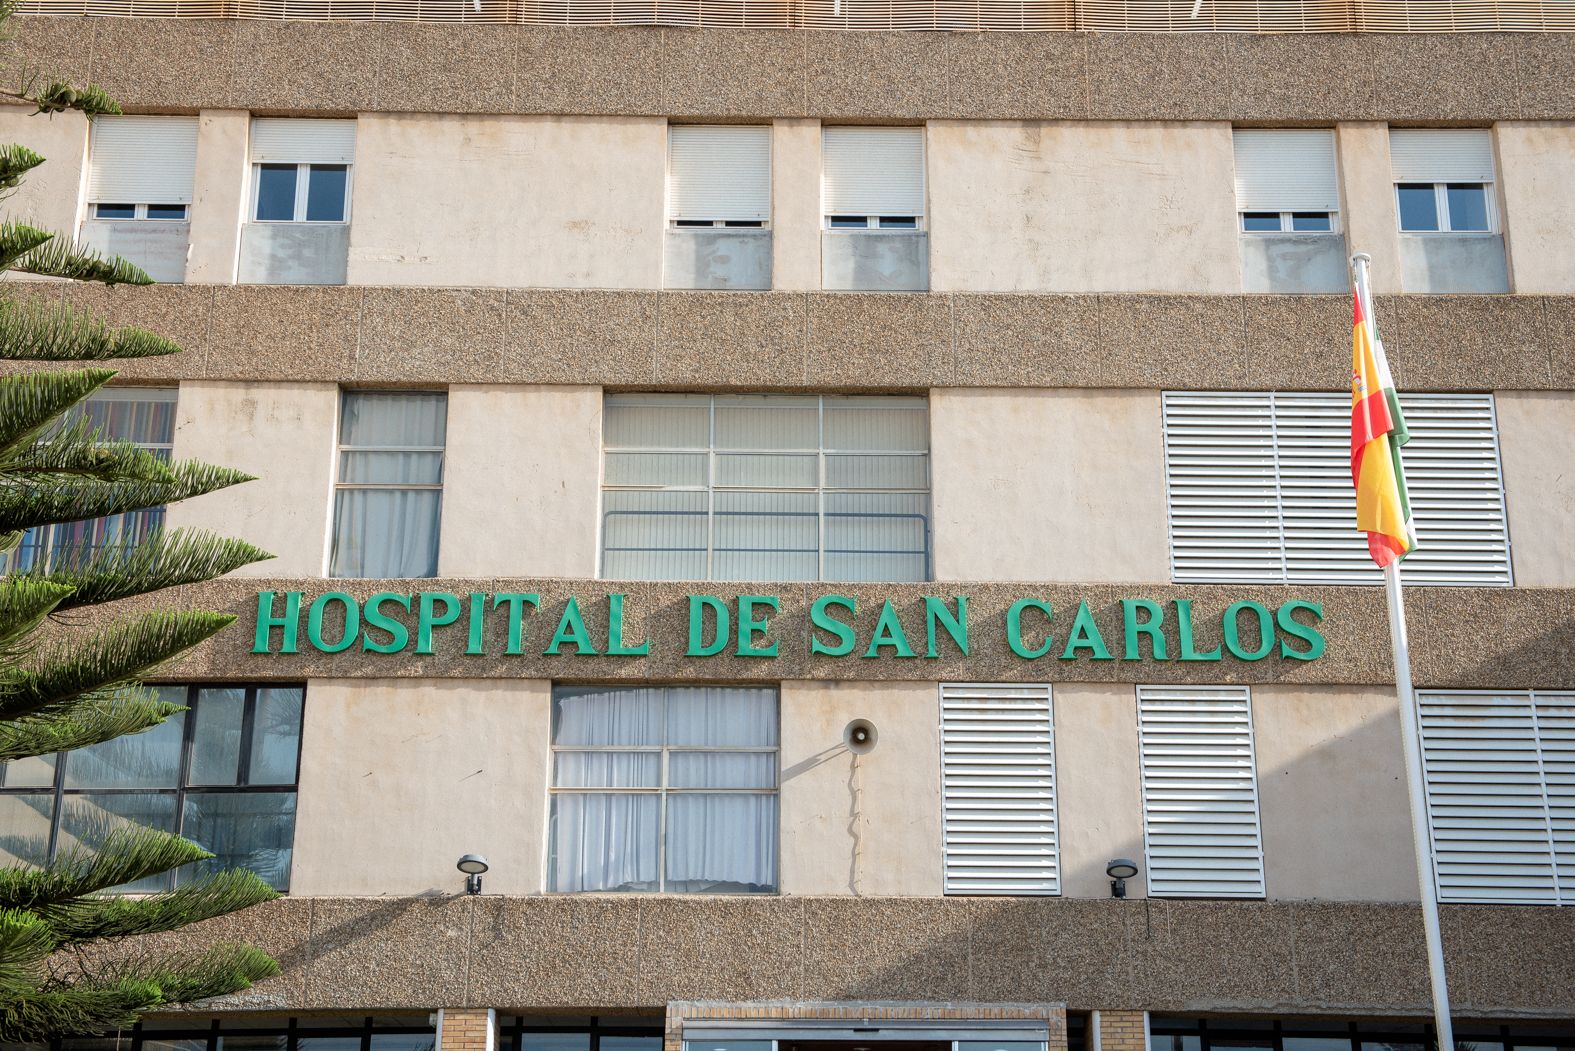 Hospital de San Carlos de la localidad de San Fernando.